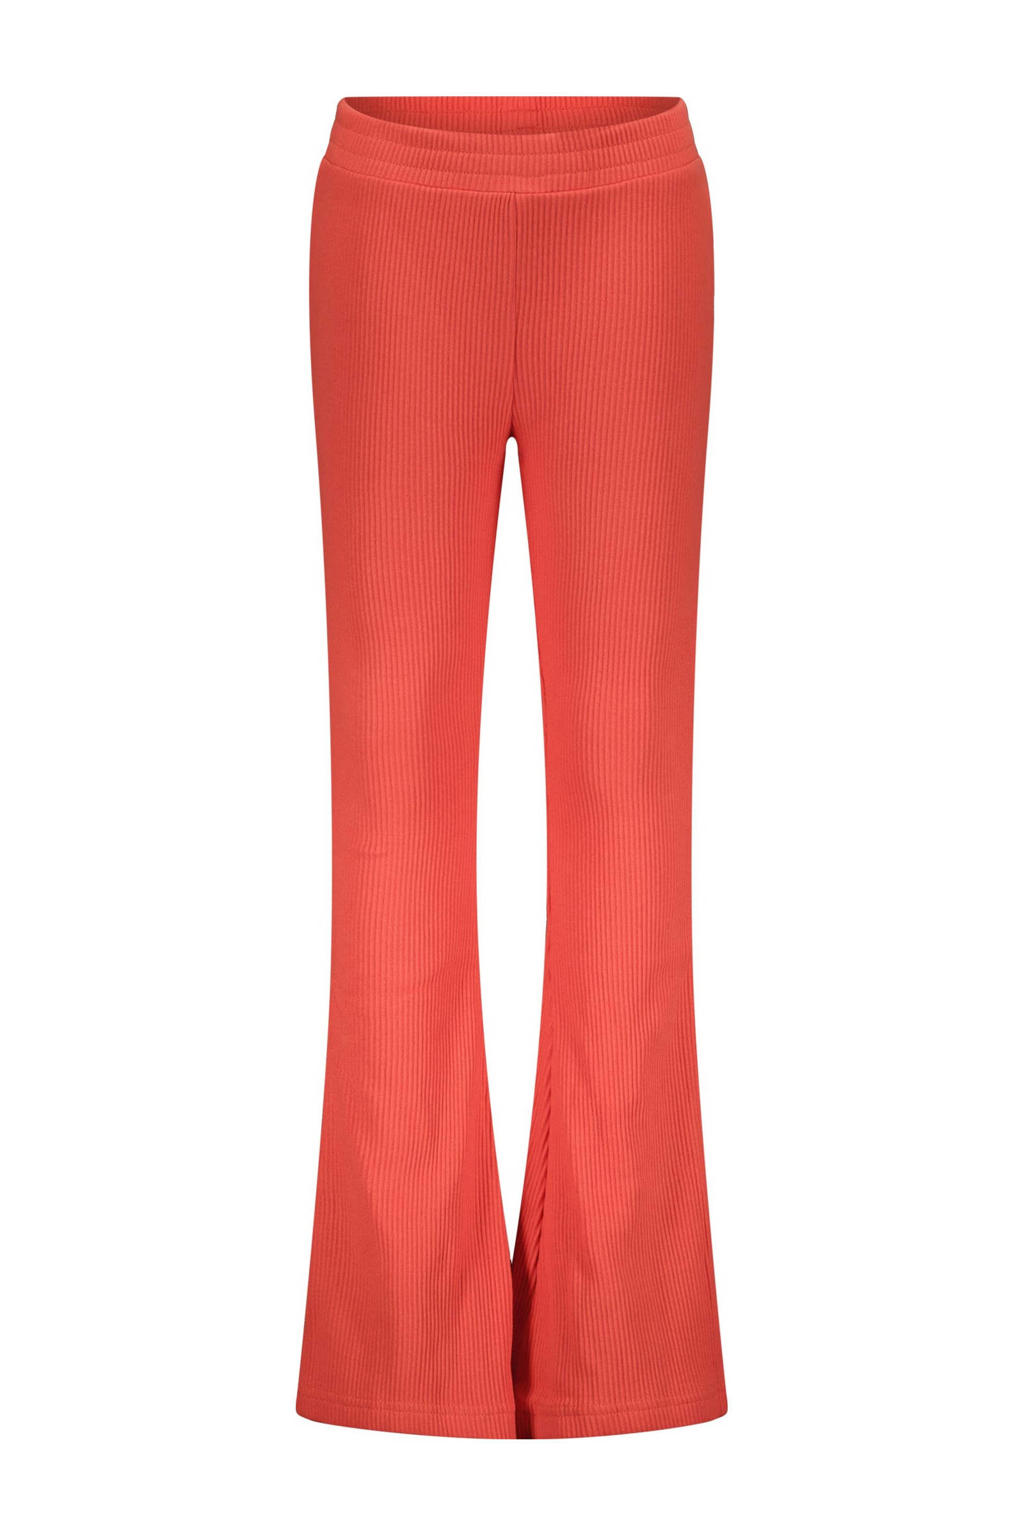 Rode meisjes Moodstreet flared broek van stretchkatoen met regular waist en elastische tailleband